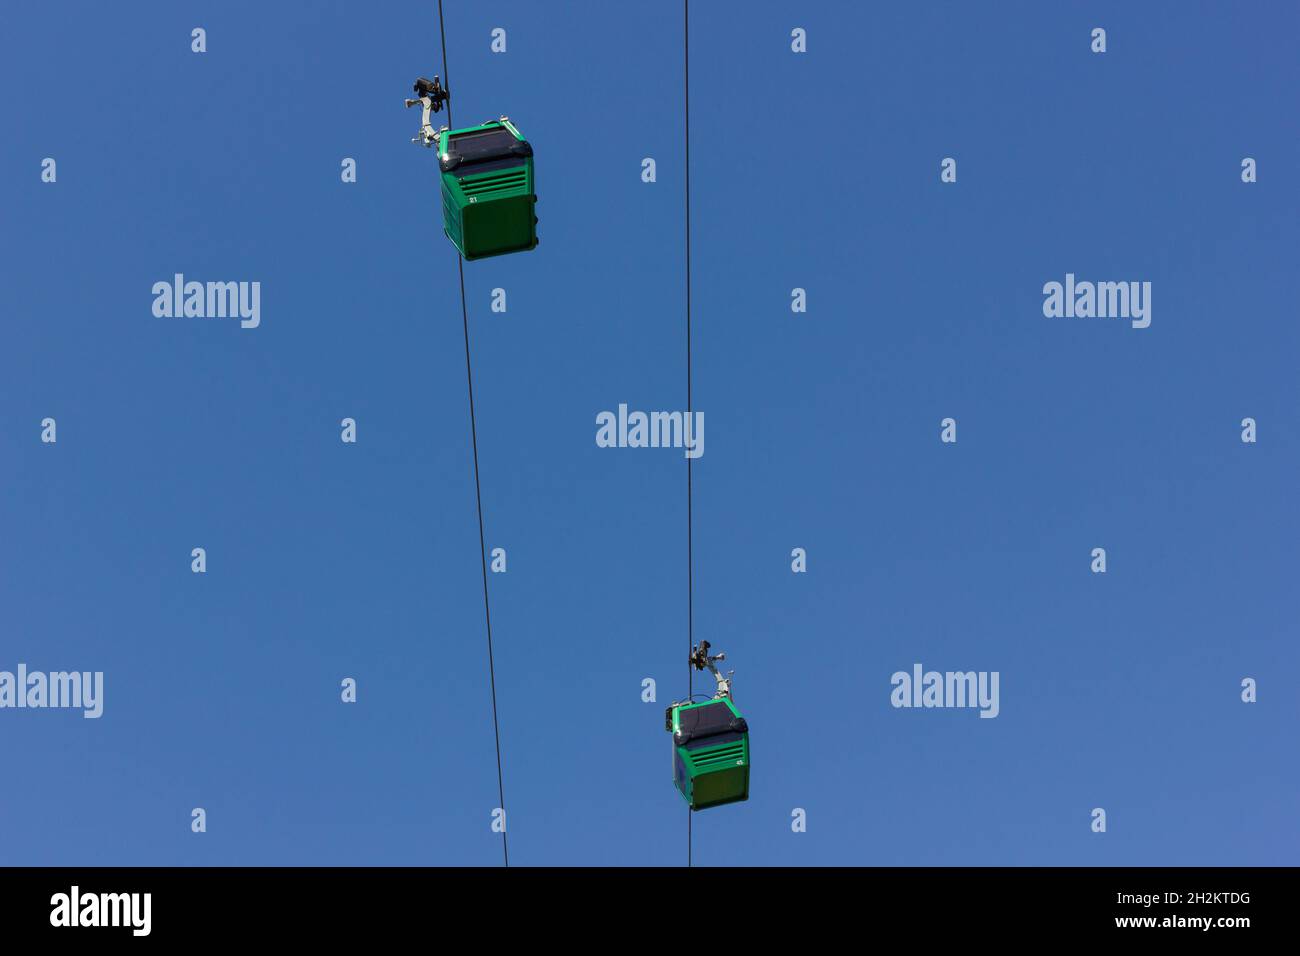 Téléphériques verts sur ciel bleu par en dessous.Concept d'attraction touristique Banque D'Images